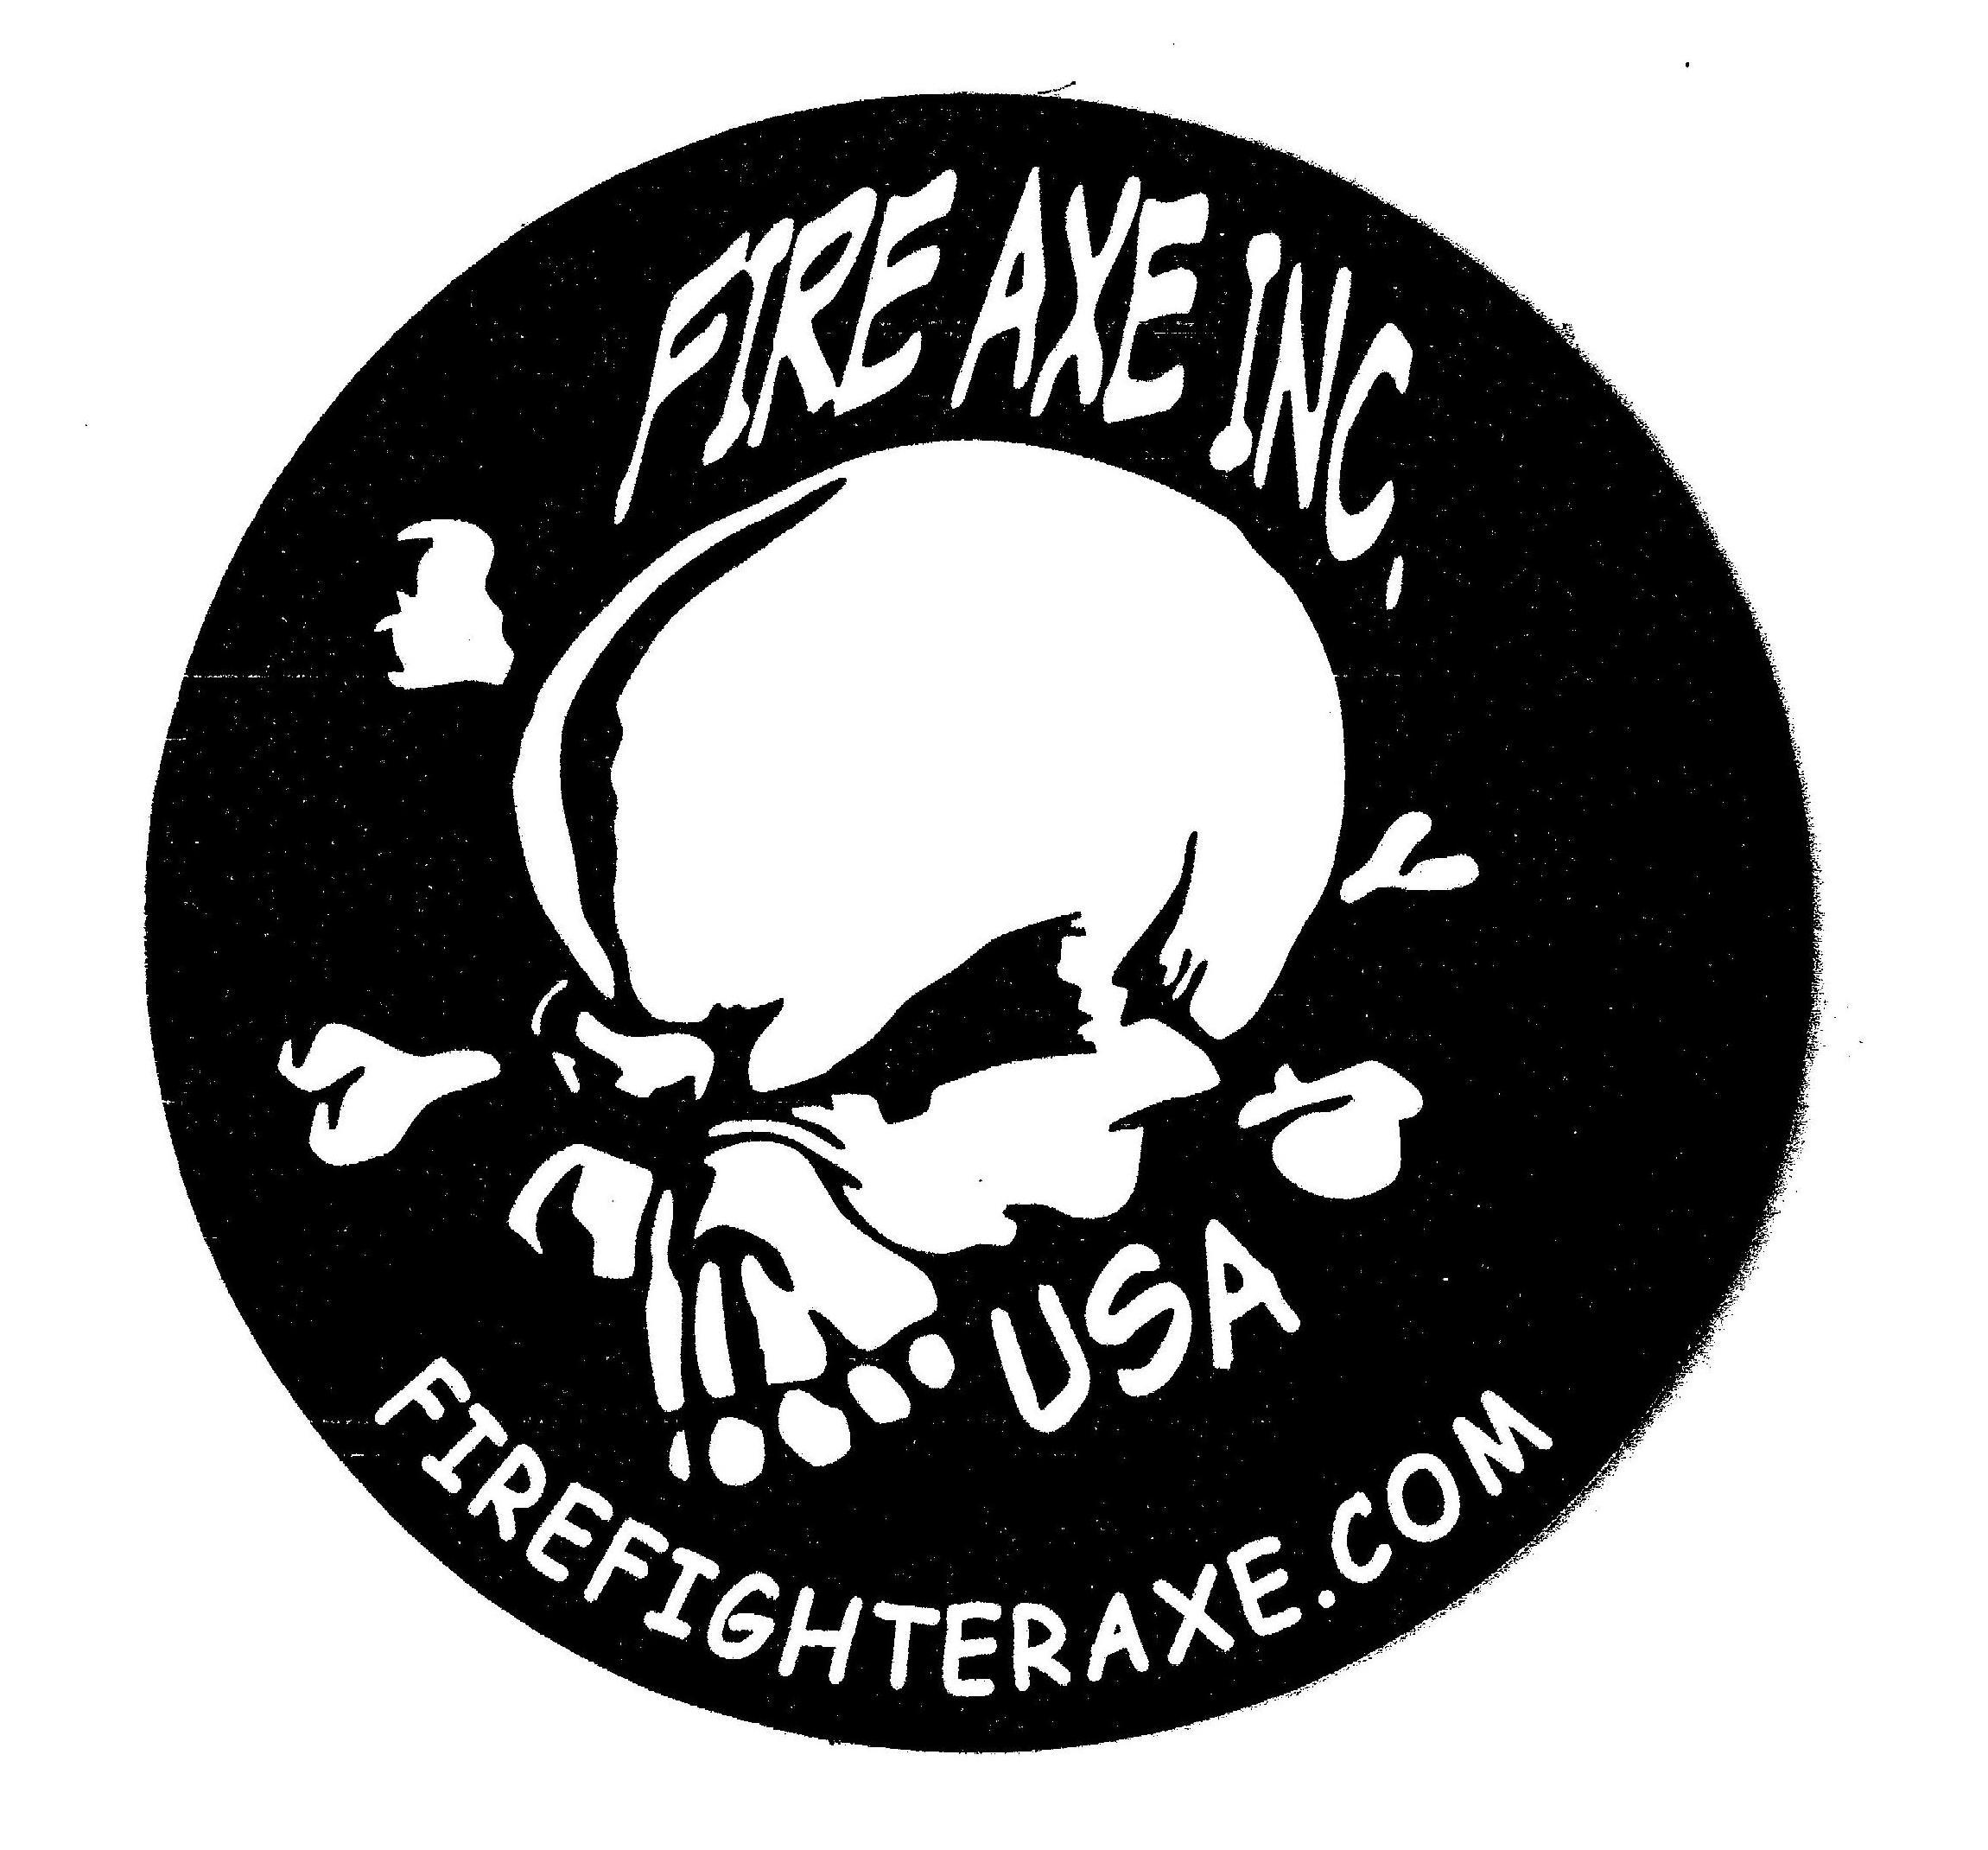  FIRE AXE INC. USA FIREFIGHTERAXE.COM